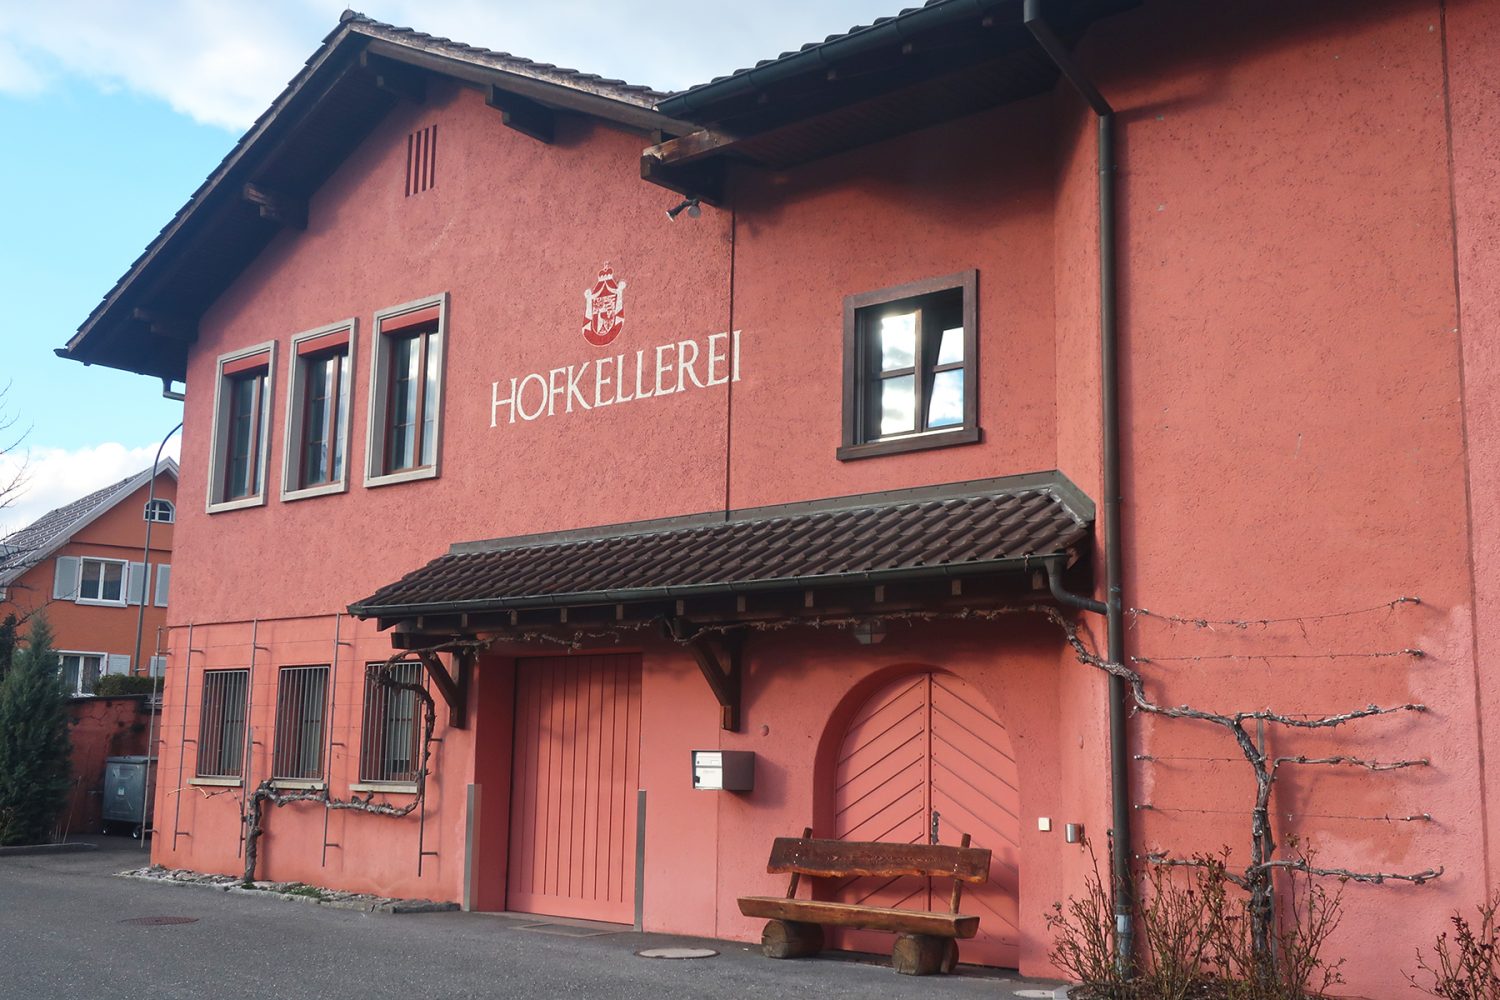 Fürstliche Ferien in Liechtenstein: 10 Highlights in Vaduz